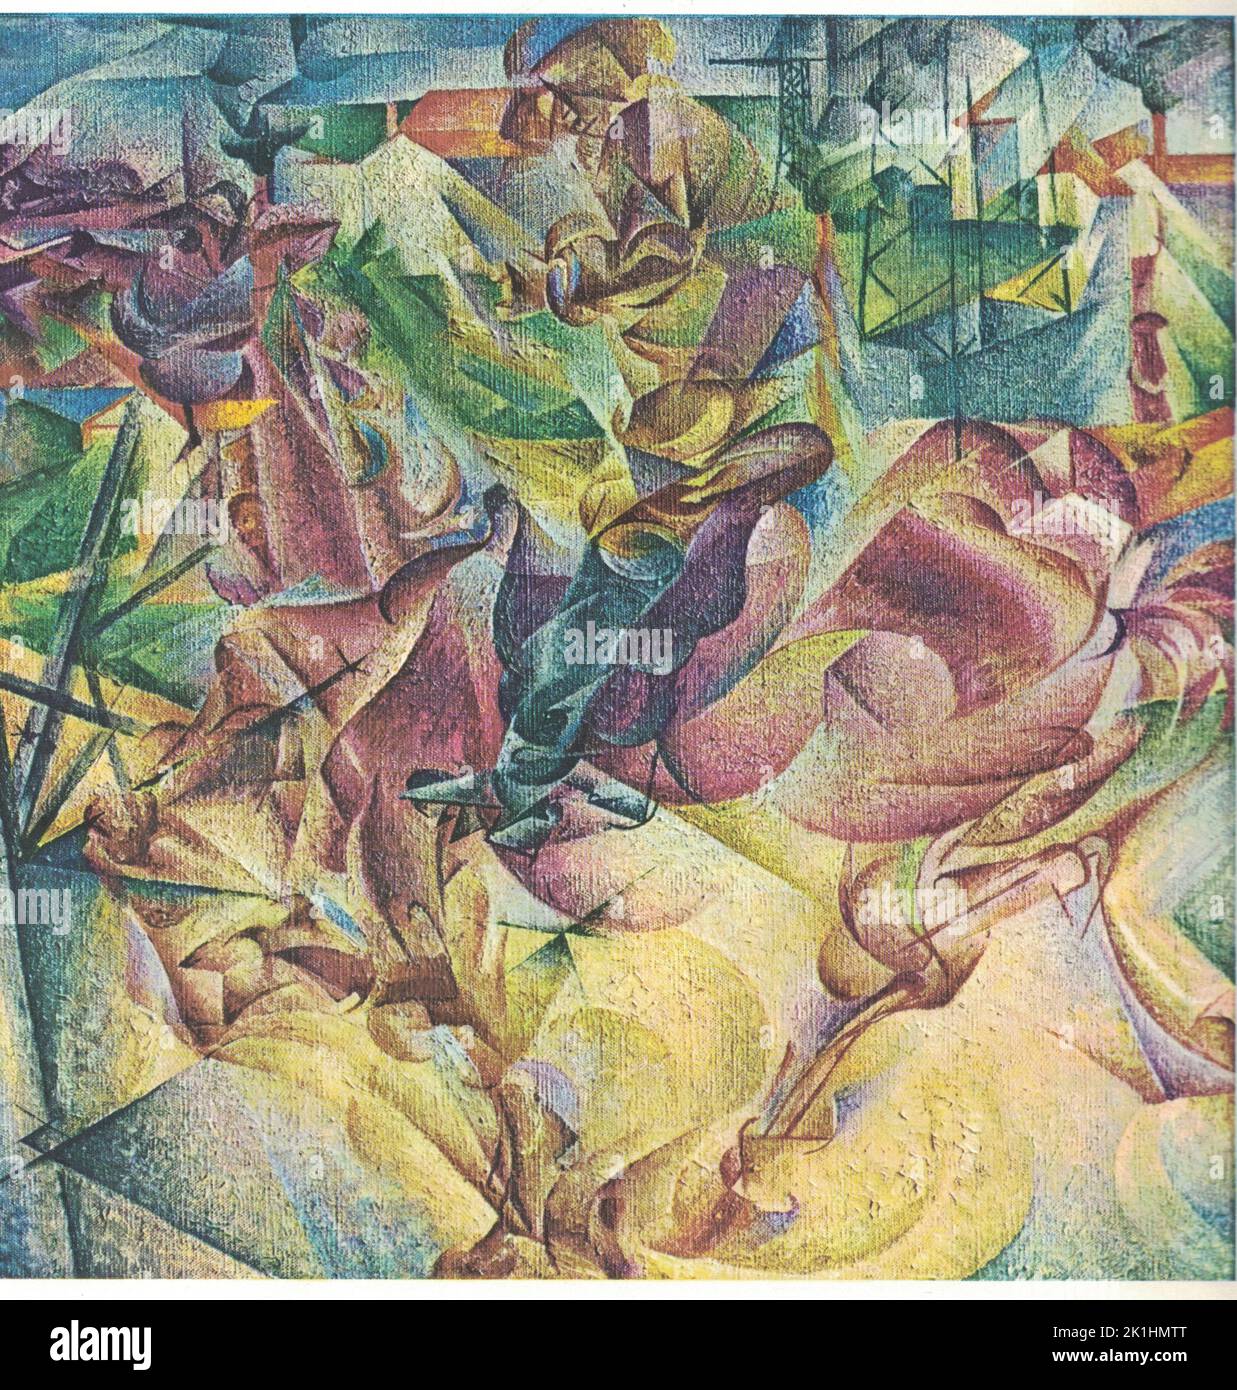 Elasticité, 1912, huile sur toile. Peinture par Umberto Boccioni. Umberto Boccioni (19 octobre 1882 – 17 août 1916) est un peintre et sculpteur italien influent. Il a contribué à façonner l'esthétique révolutionnaire du mouvement Futurisme comme l'une de ses figures principales. Malgré sa courte vie, son approche du dynamisme de la forme et de la déconstruction de la masse solide guide les artistes longtemps après sa mort. Ses œuvres sont détenues par de nombreux musées d'art publics et, en 1988, le Metropolitan Museum of Art de New York a organisé une importante rétrospective de 100 pièces. Banque D'Images